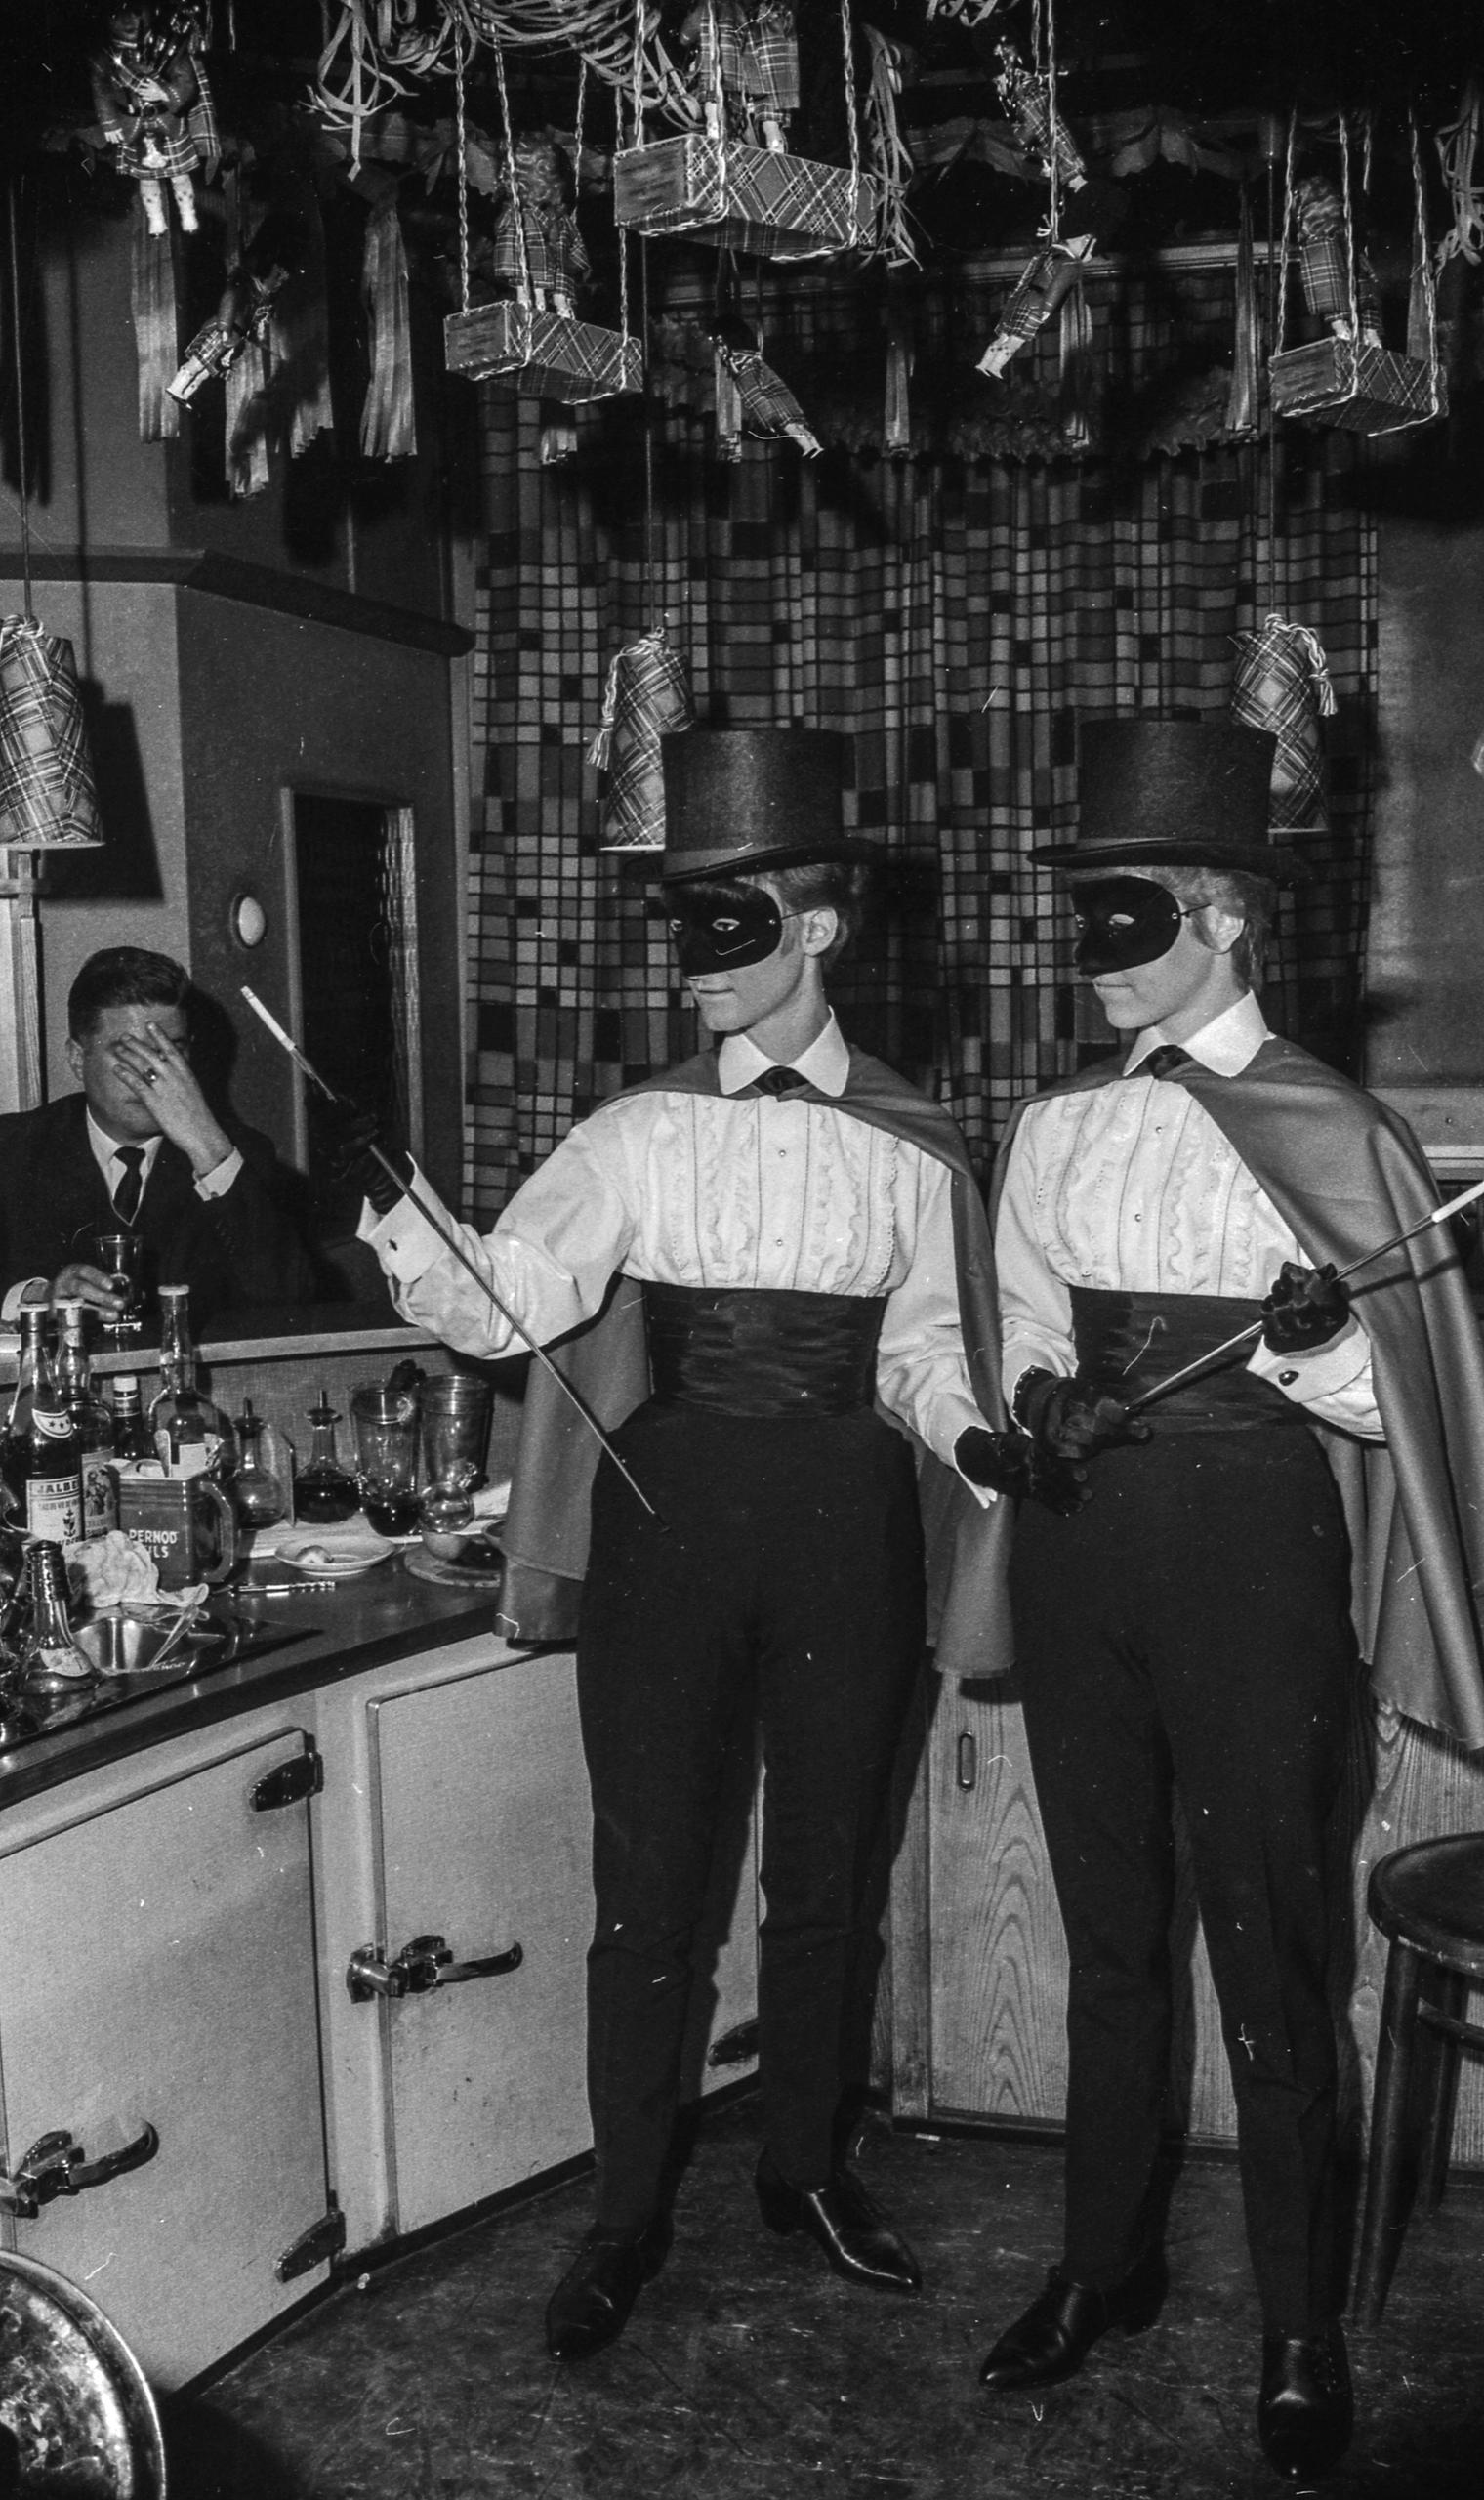 バーフューサー・バーでのファスナハト（カーニバル）の様子。ハイテンションな雰囲気の中、派手な衣装をまとった人たちが酒とタバコに興じた。チューリヒ、1963年撮影